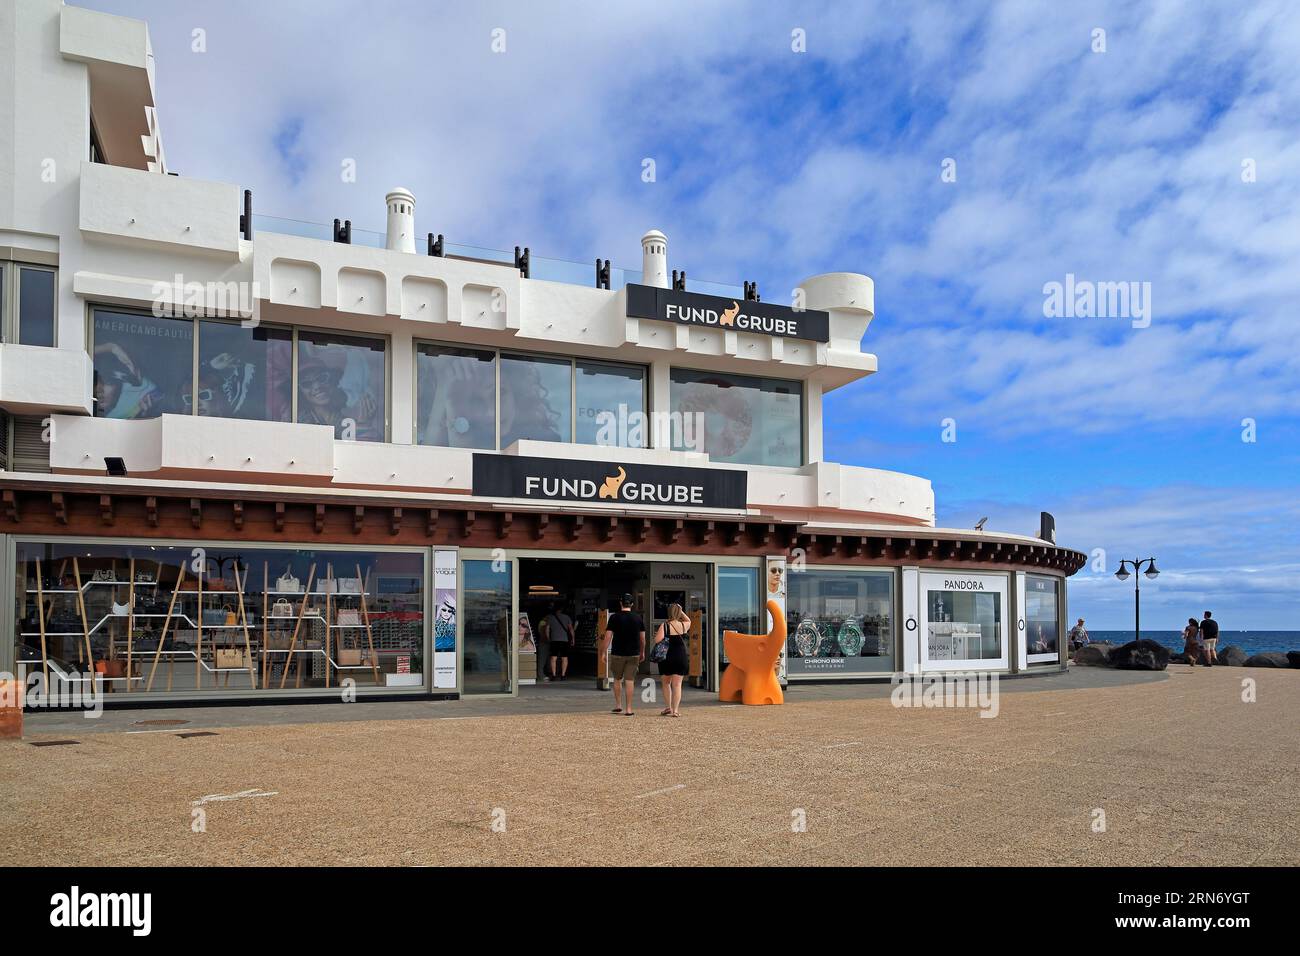 Fonds Grube Shop, Playa Blanca, Lanzarote, îles Canaries. Prise en février 23 Banque D'Images